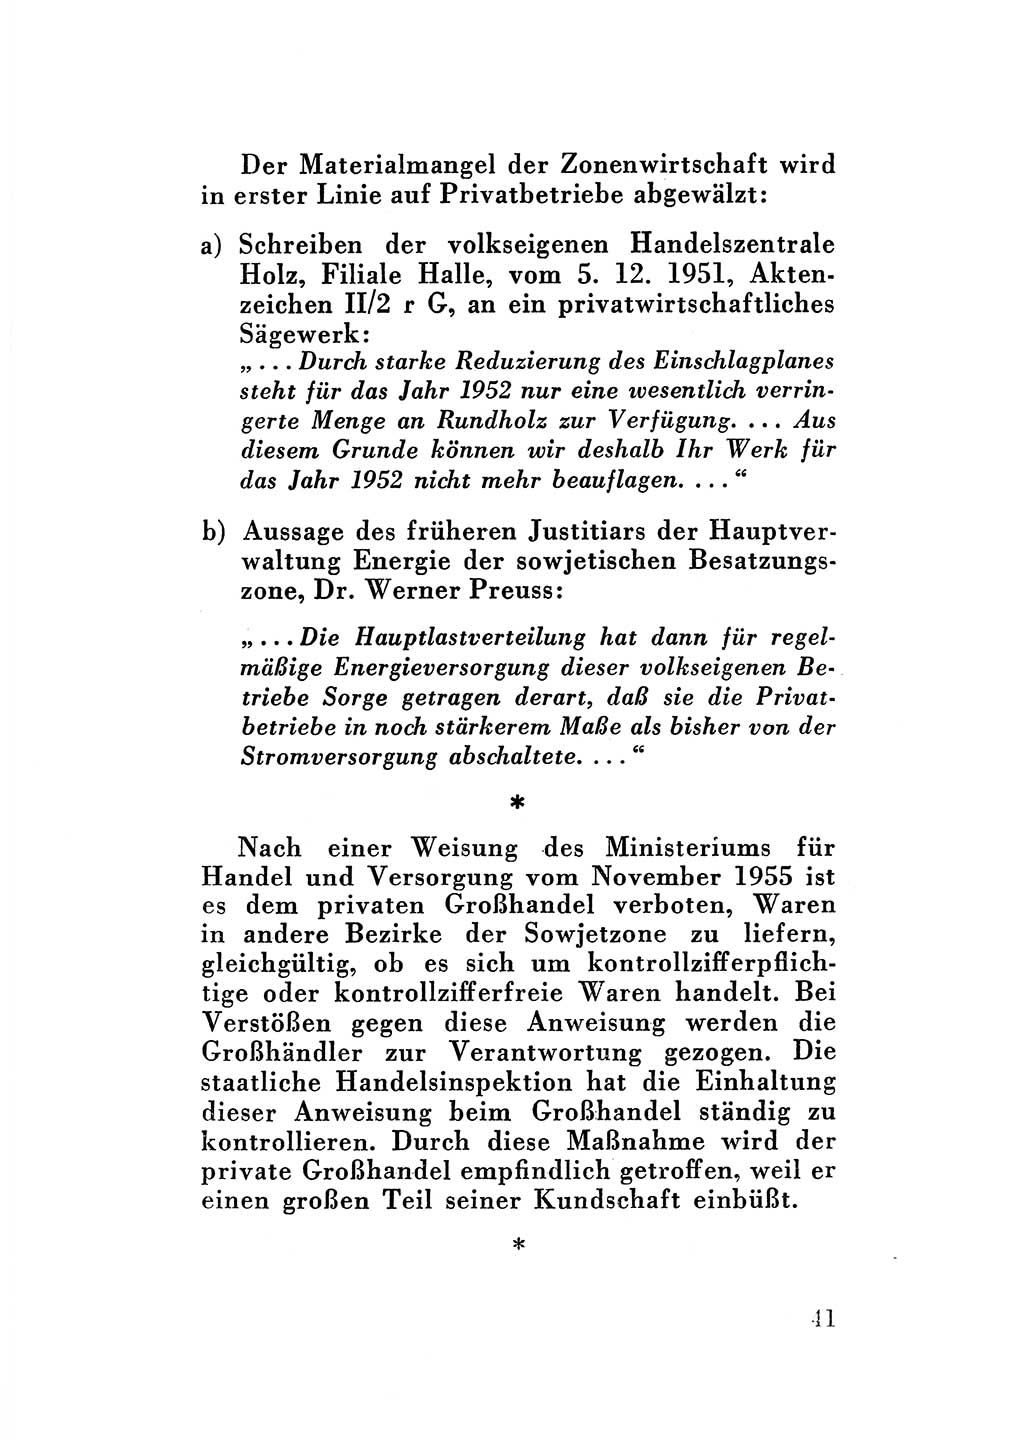 Katalog des Unrechts, Untersuchungsausschuß Freiheitlicher Juristen (UfJ) [Bundesrepublik Deutschland (BRD)] 1956, Seite 41 (Kat. UnR. UfJ BRD 1956, S. 41)